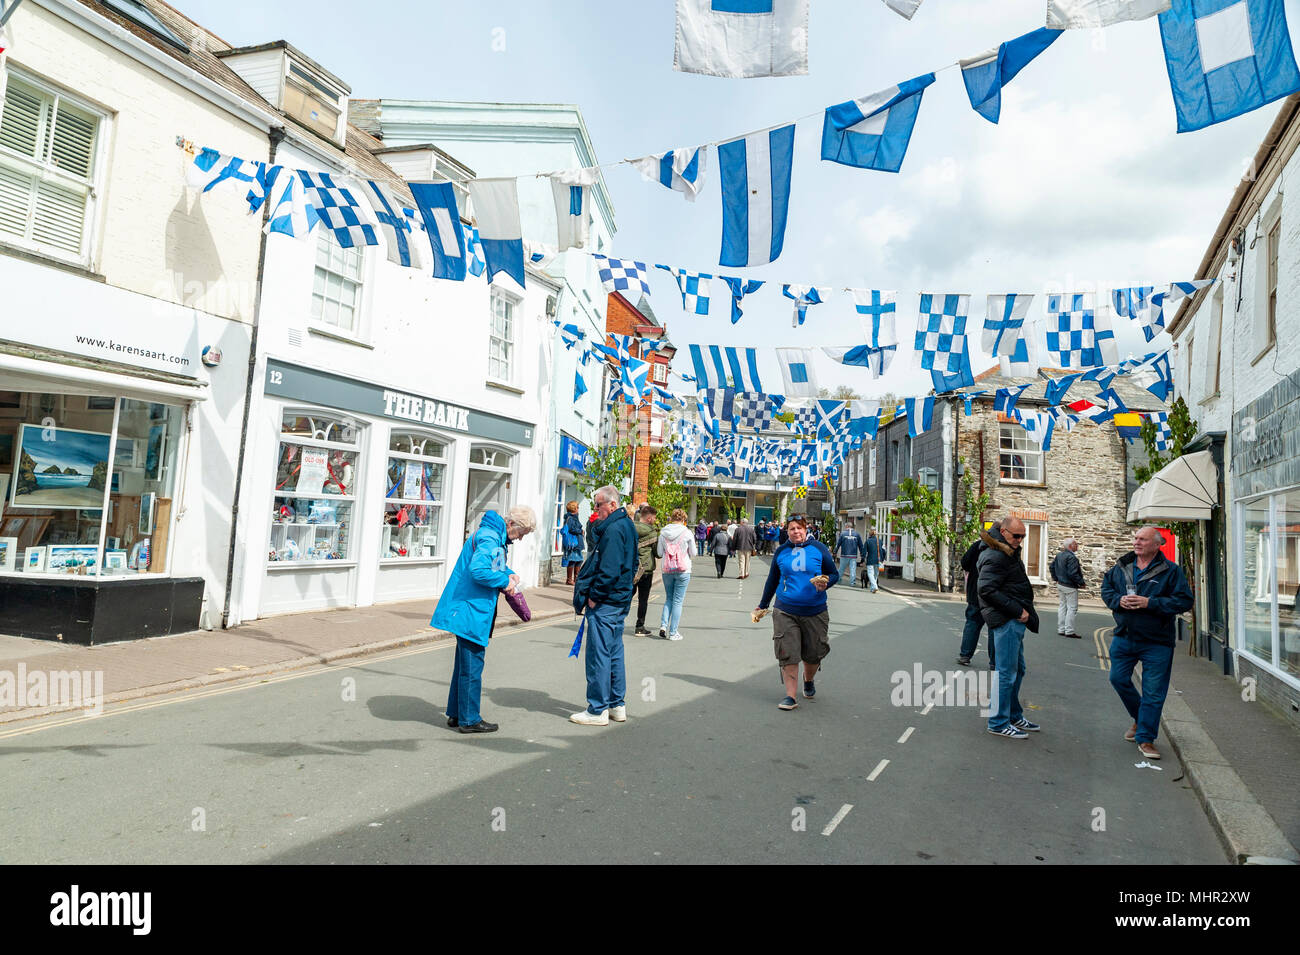 Editorial : inconnu des membres du public, les logos et la signalisation. Padstow, Cornwall, UK 01/05/2018. Les résidents de Padstow parade dans les rues Banque D'Images